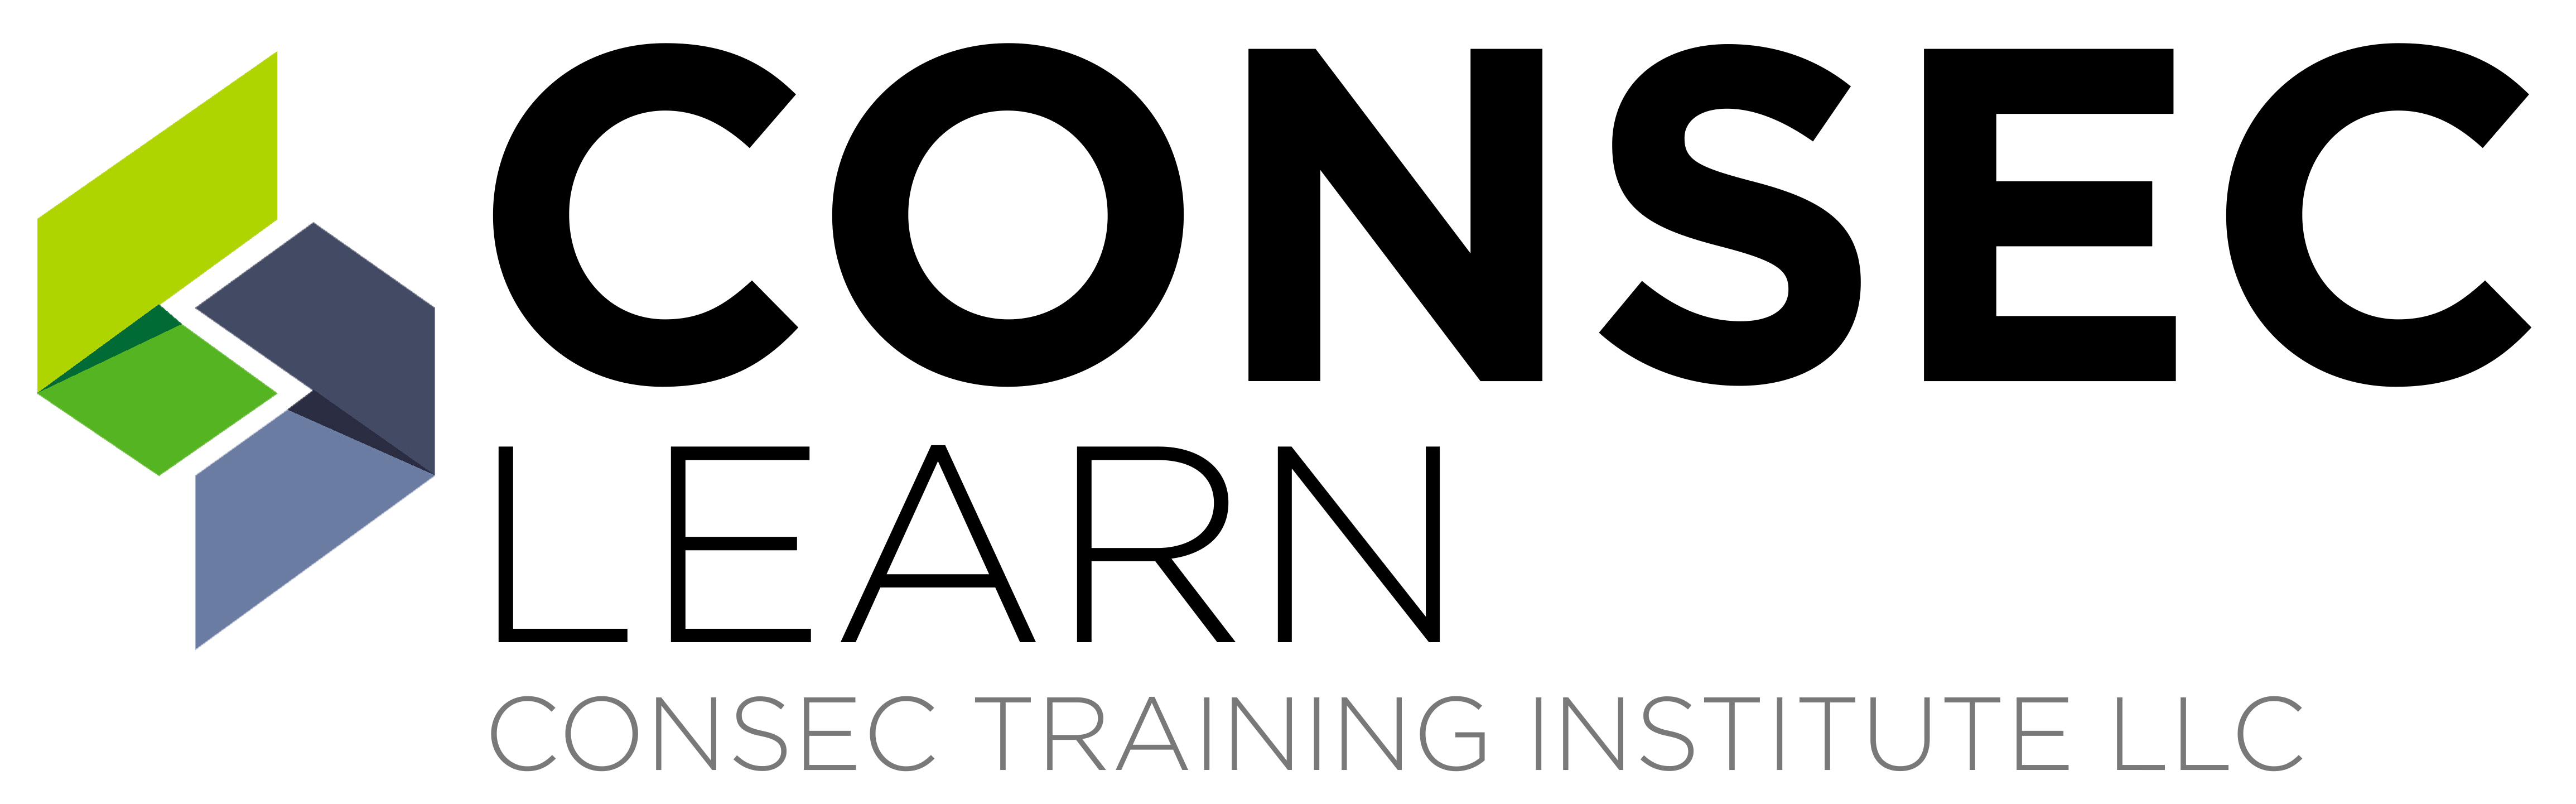 Consec Training Institute LLC Logo